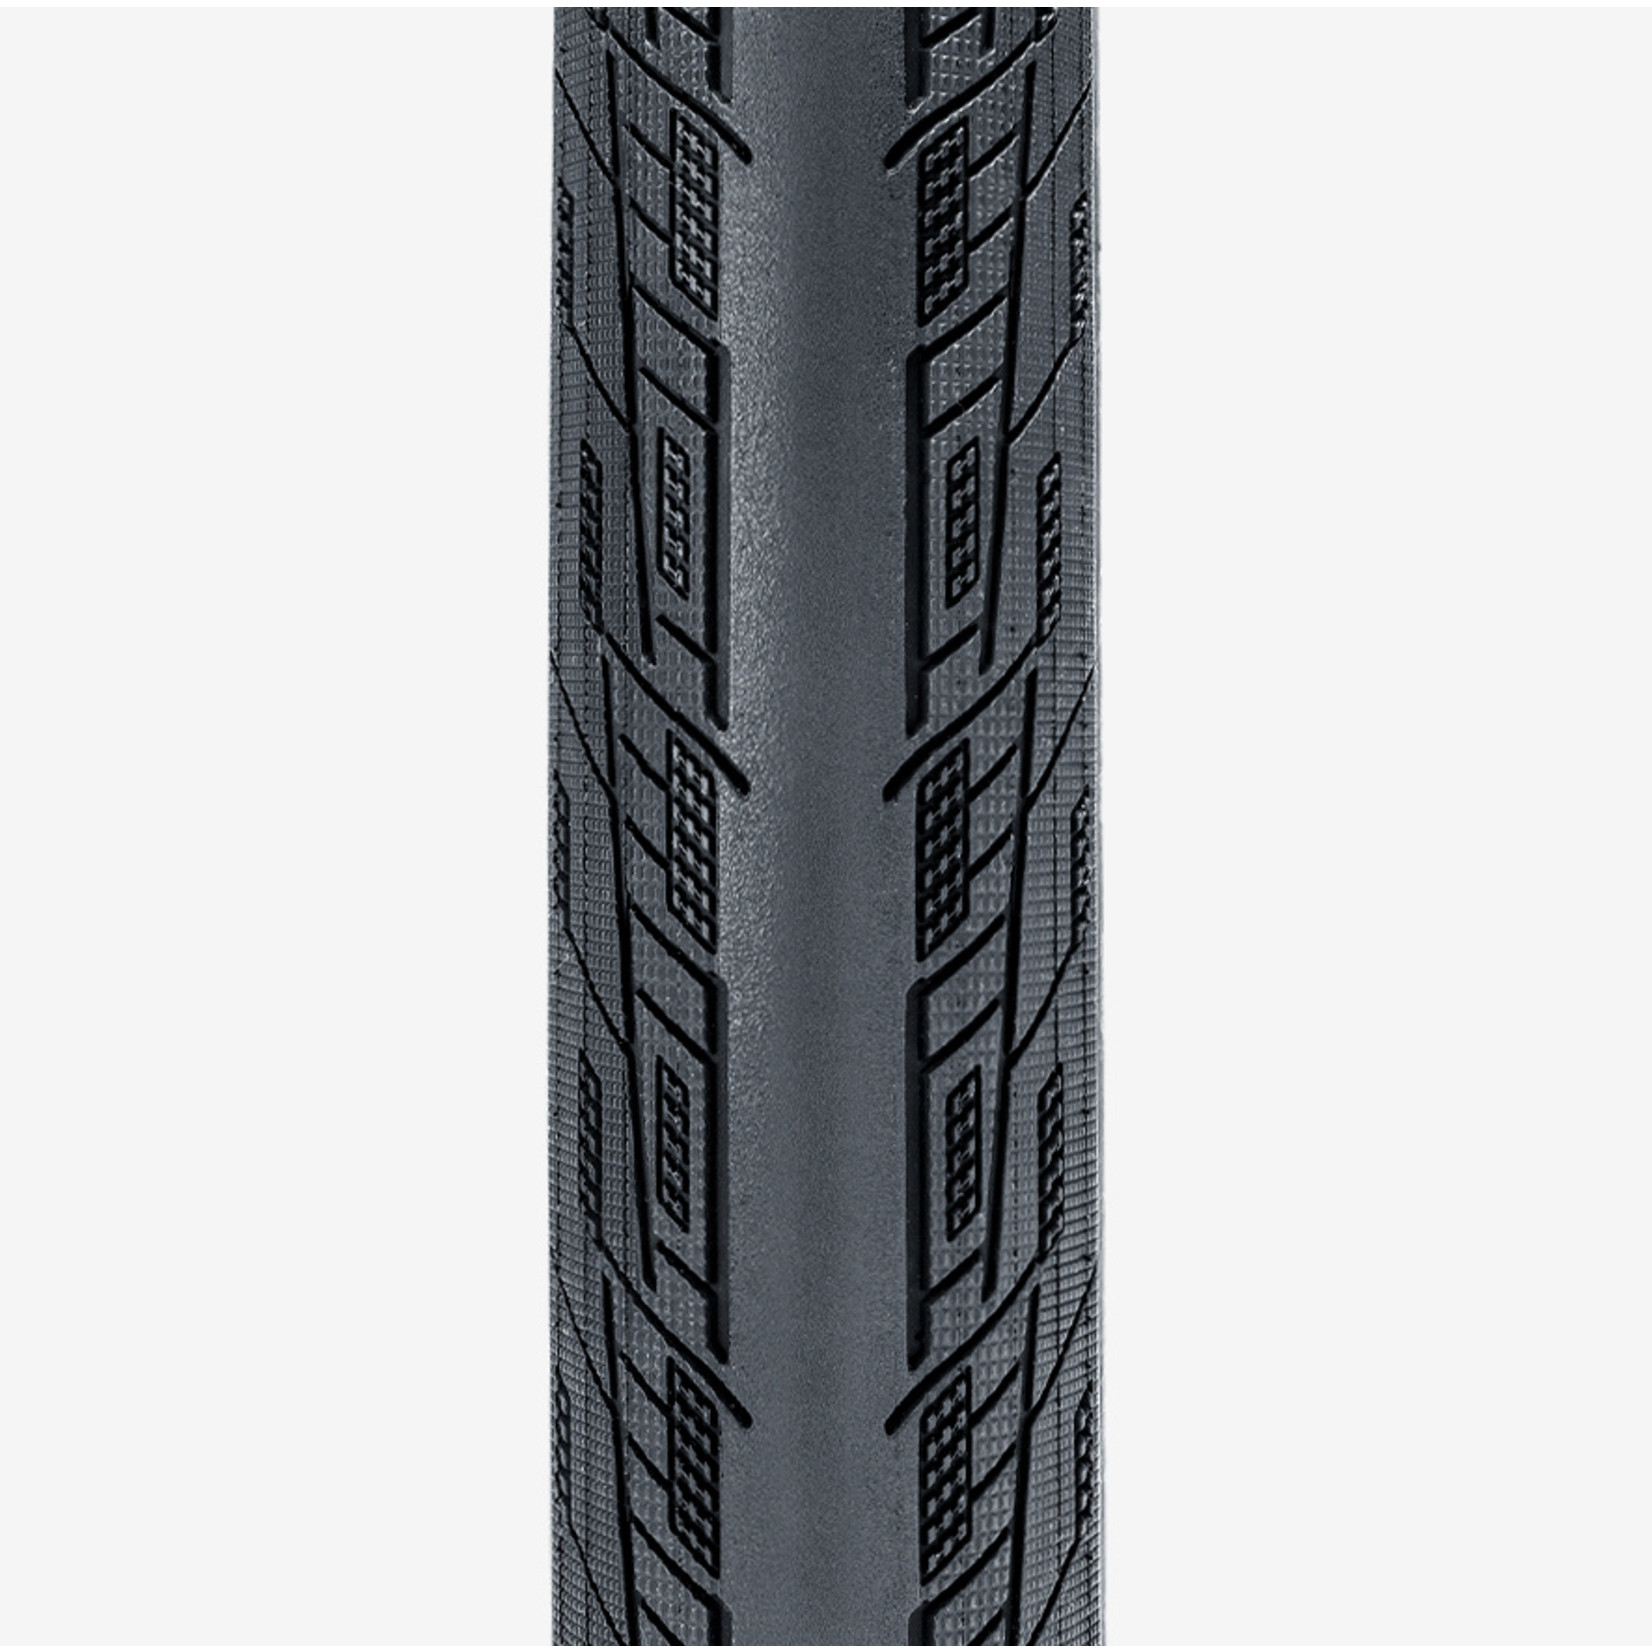 Tioga Tioga FASTR-X Black Label Tire Foldable